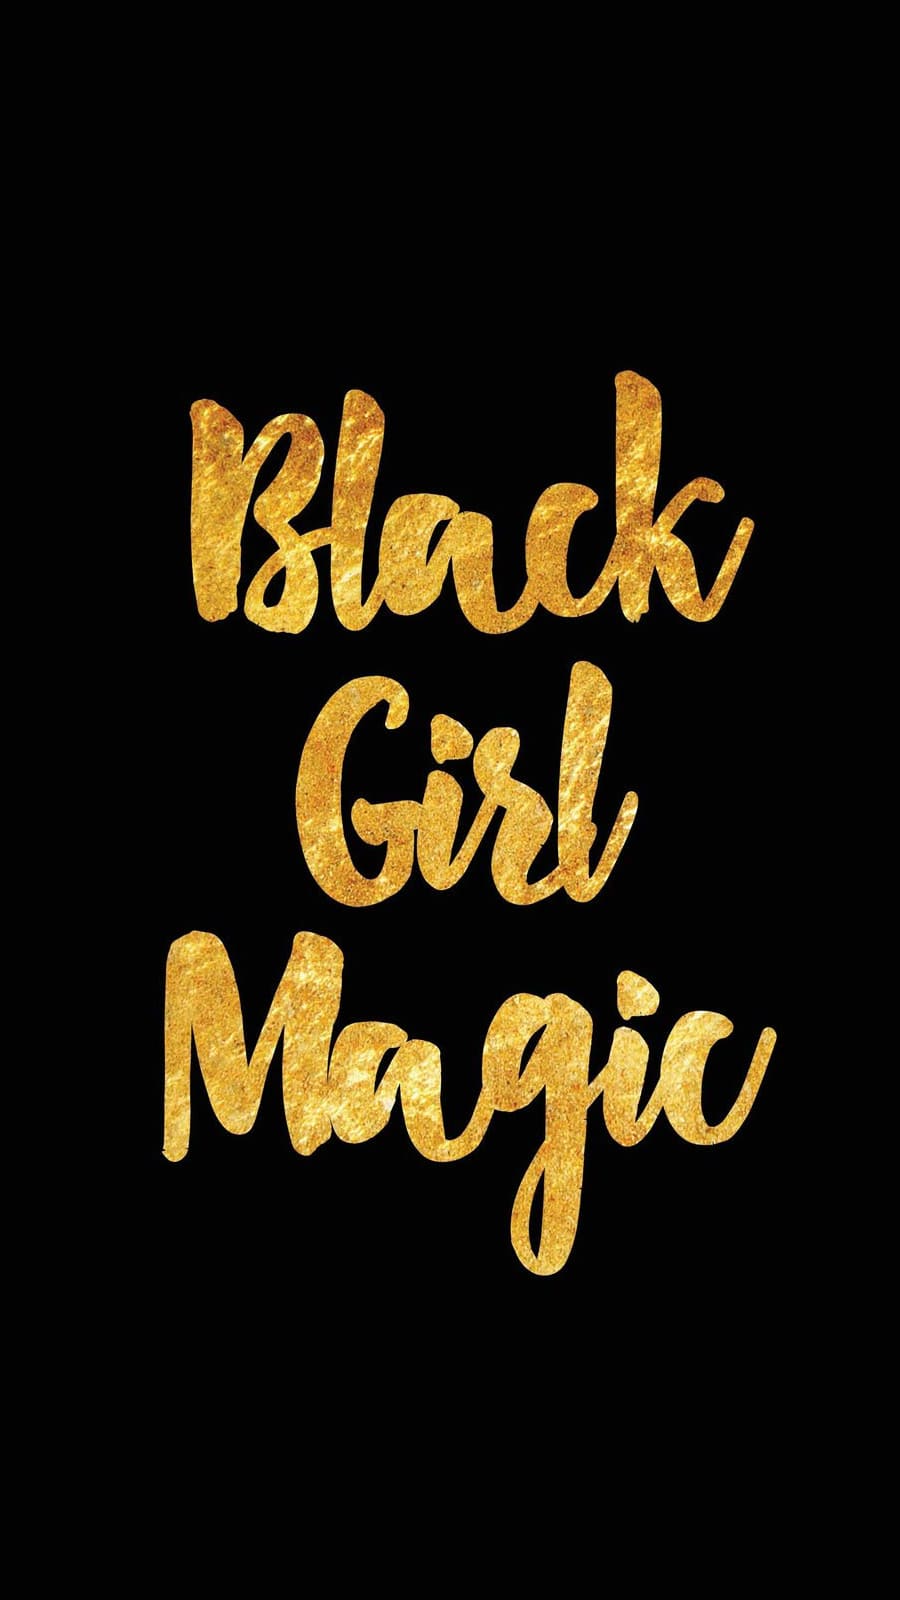 Black Girl Magic Wallpapers